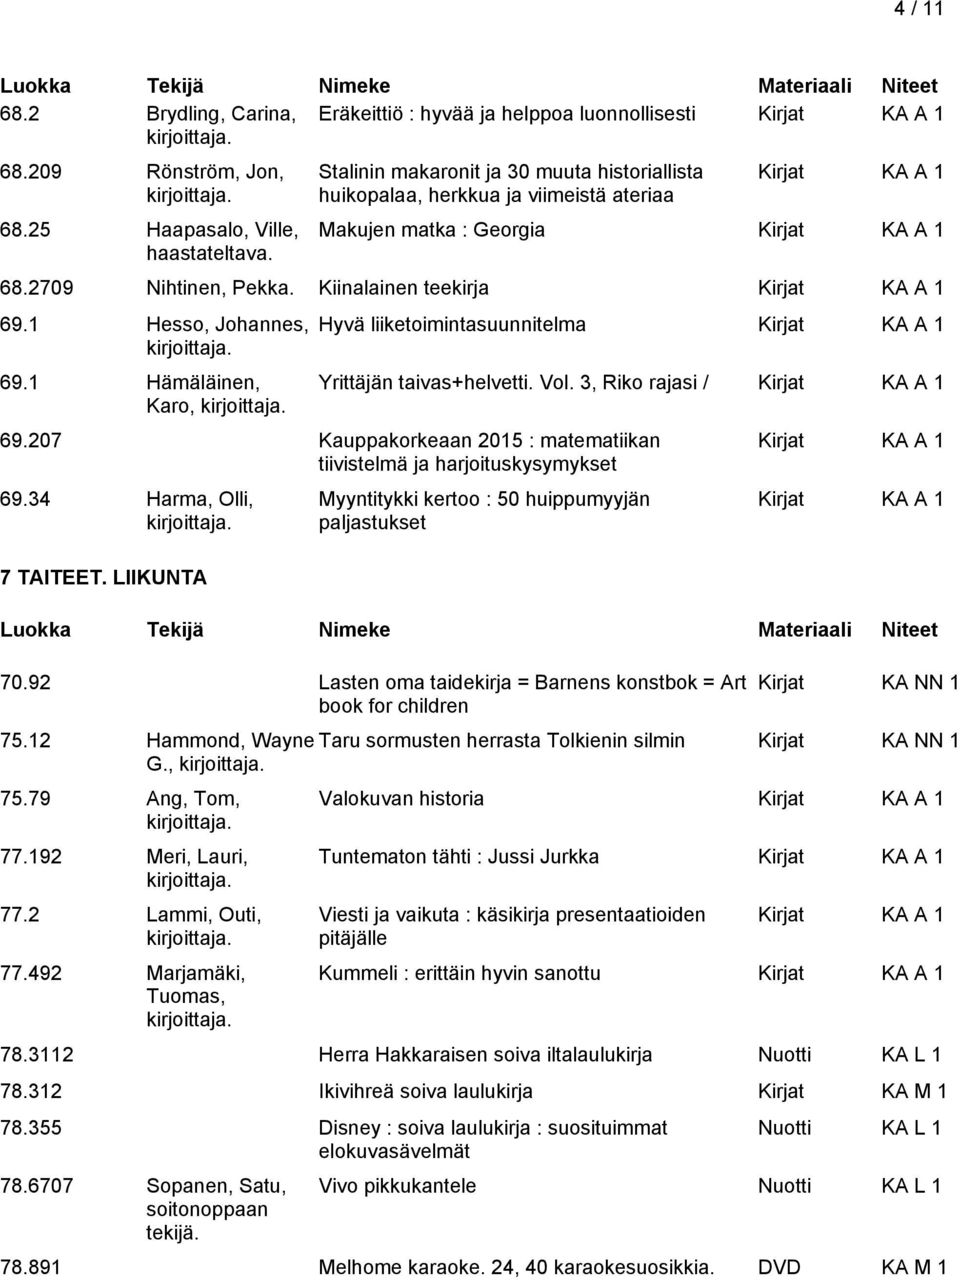 1 Hämäläinen, Karo, Hyvä liiketoimintasuunnitelma Yrittäjän taivas+helvetti. Vol. 3, Riko rajasi / 69.207 Kauppakorkeaan 2015 : matematiikan tiivistelmä ja harjoituskysymykset 69.